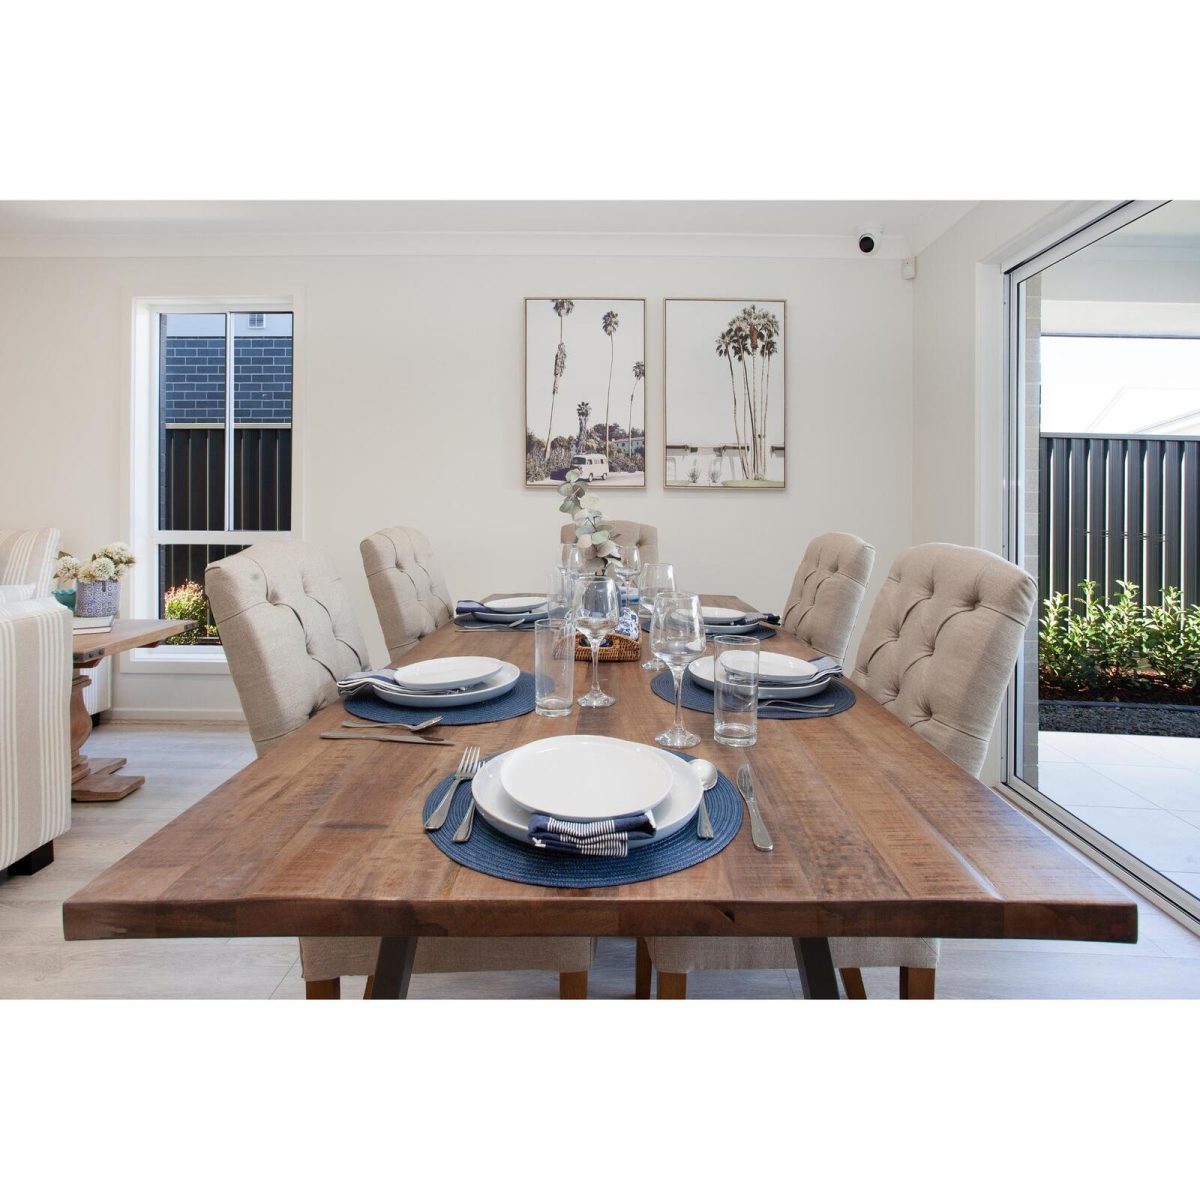 Orangevale Dining Table 180cm Live Edge Solid Mango Wood Unique Furniture – Natural